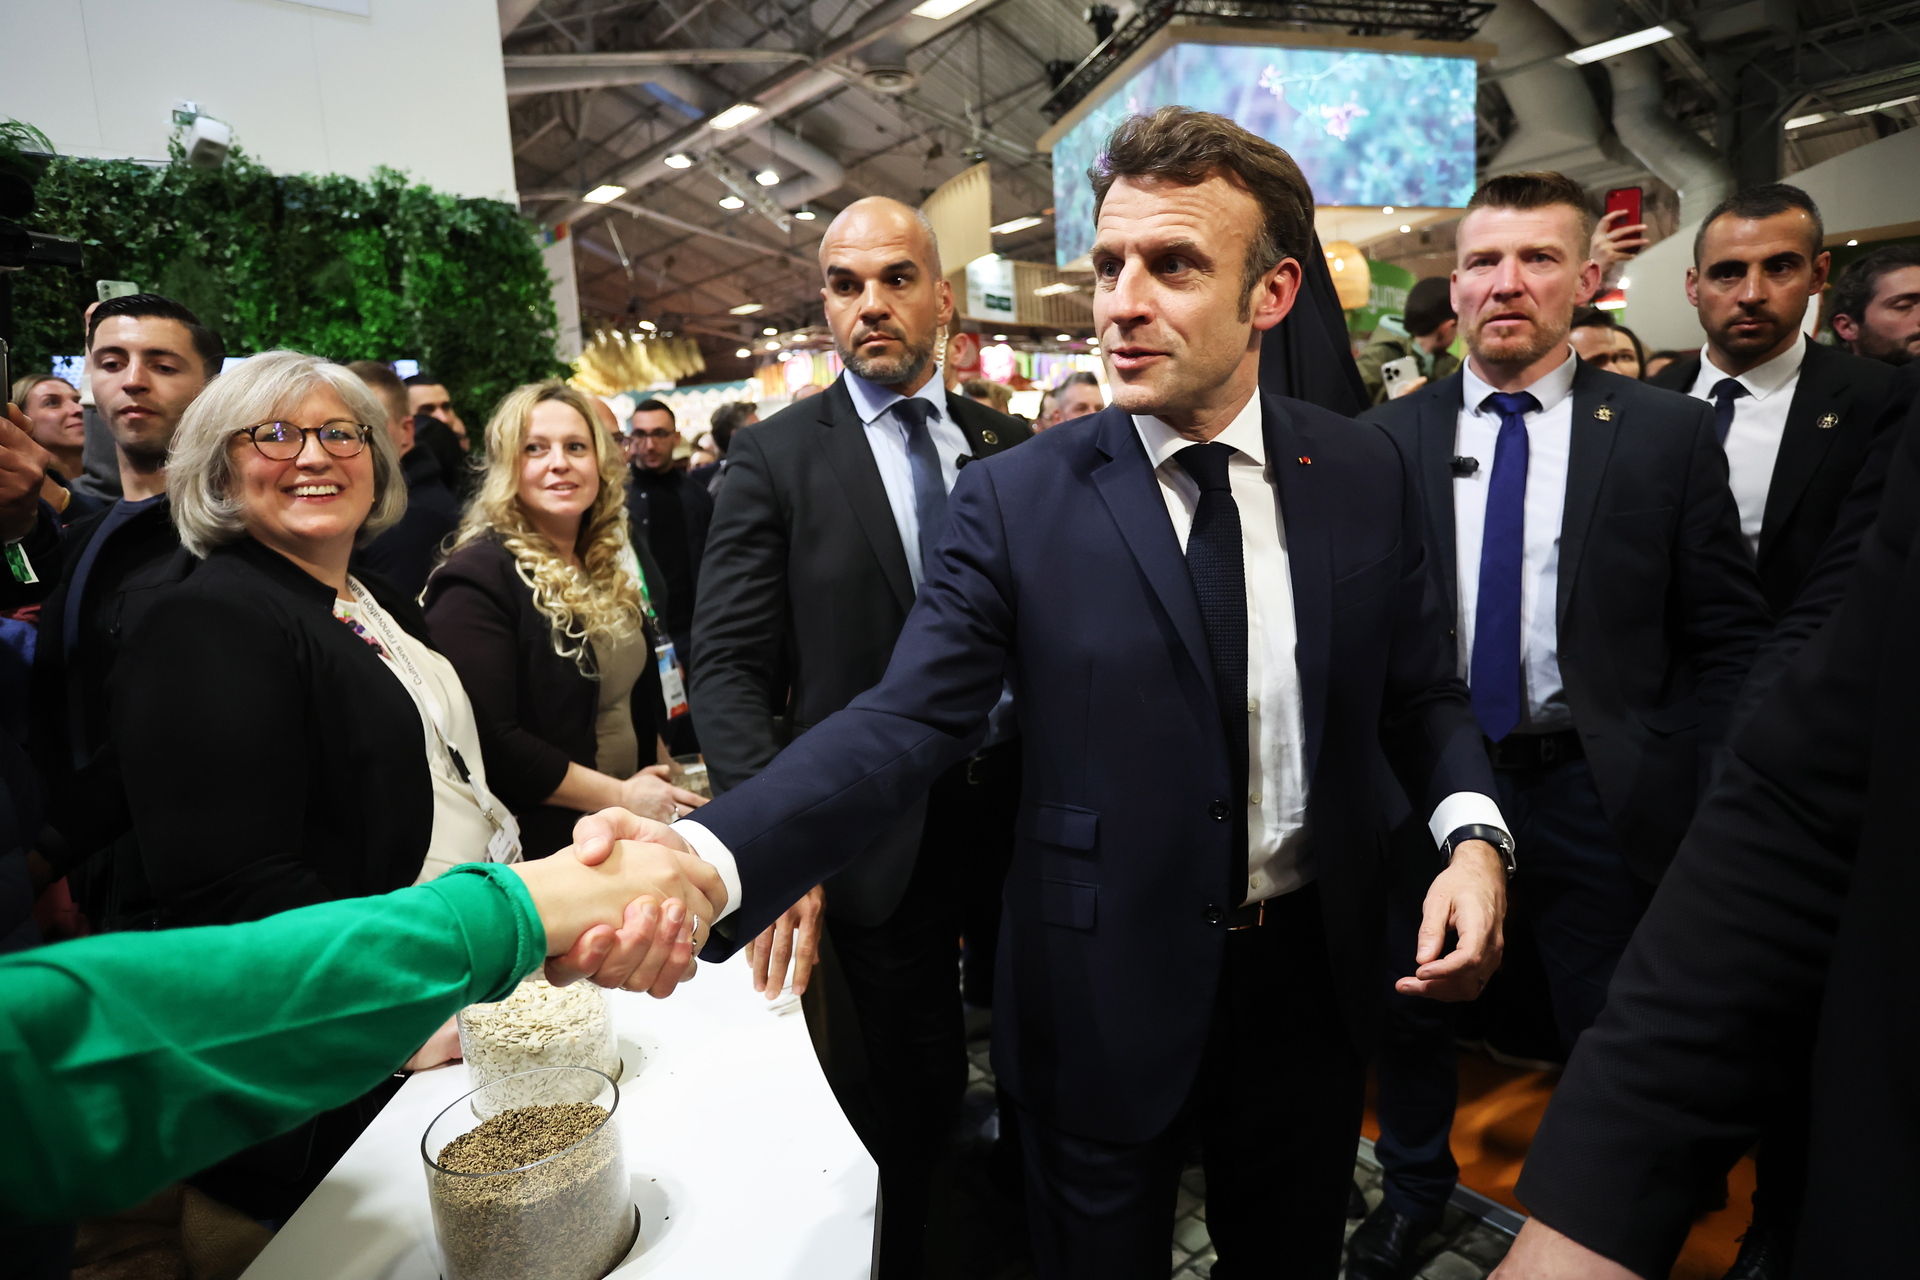 Durante su visita al Salón de la Agricultura de París, Macron pidió a China que 'presione a Rusia' para 'terminar con esta agresión' y 'construir la paz'. (EFE)